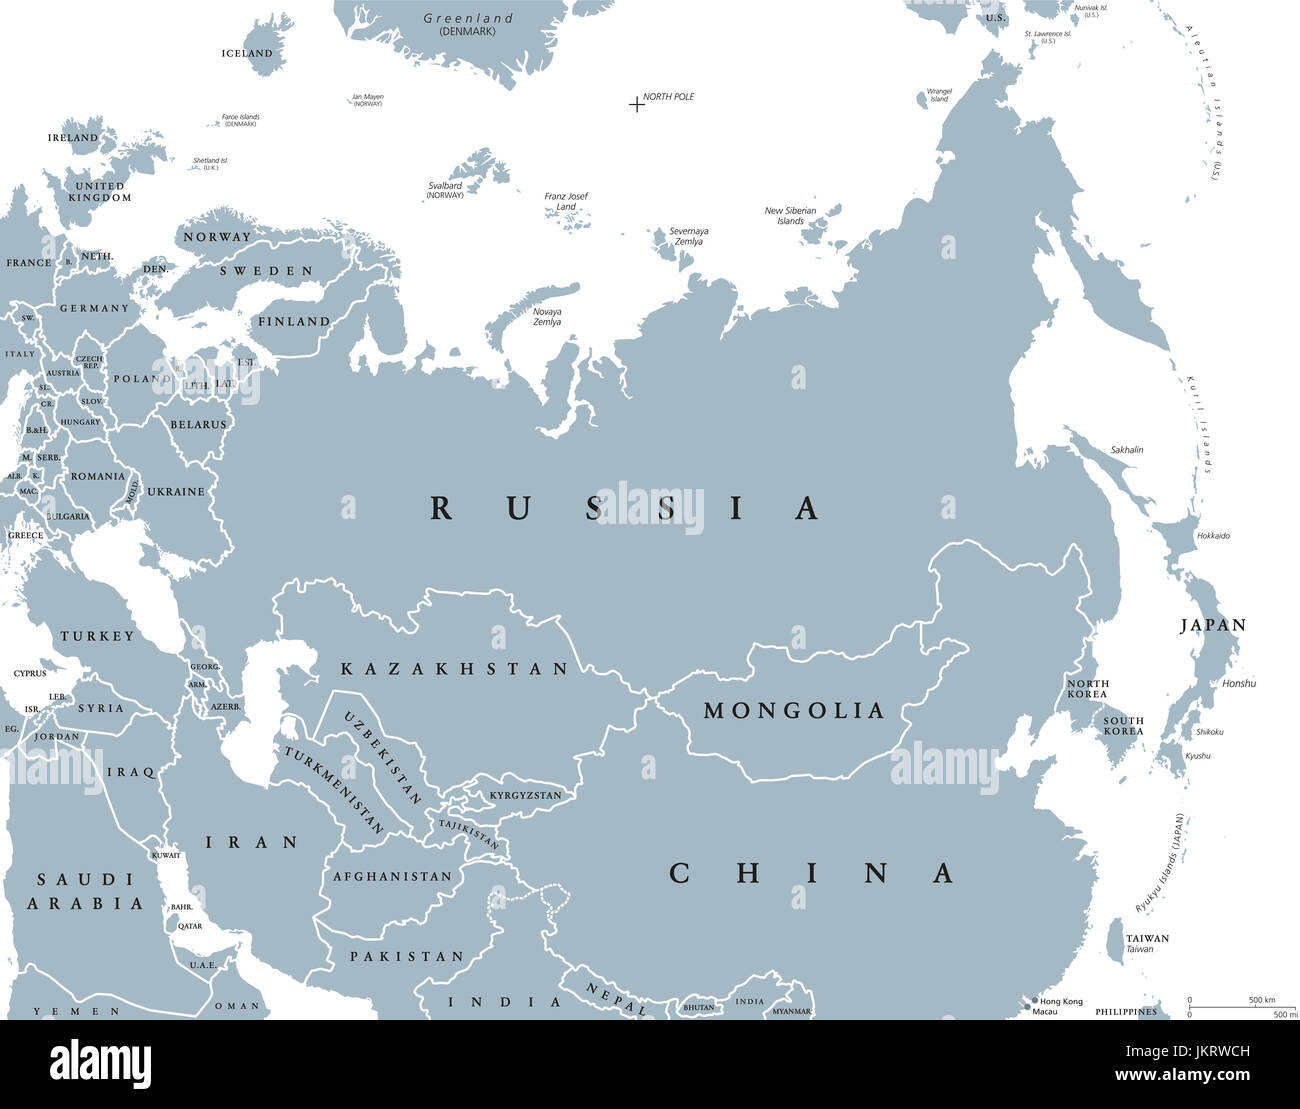 Eurasia mapa político con países y fronteras. Masa continental combinada de Europa y Asia situados en los hemisferios septentrional y oriental. Foto de stock